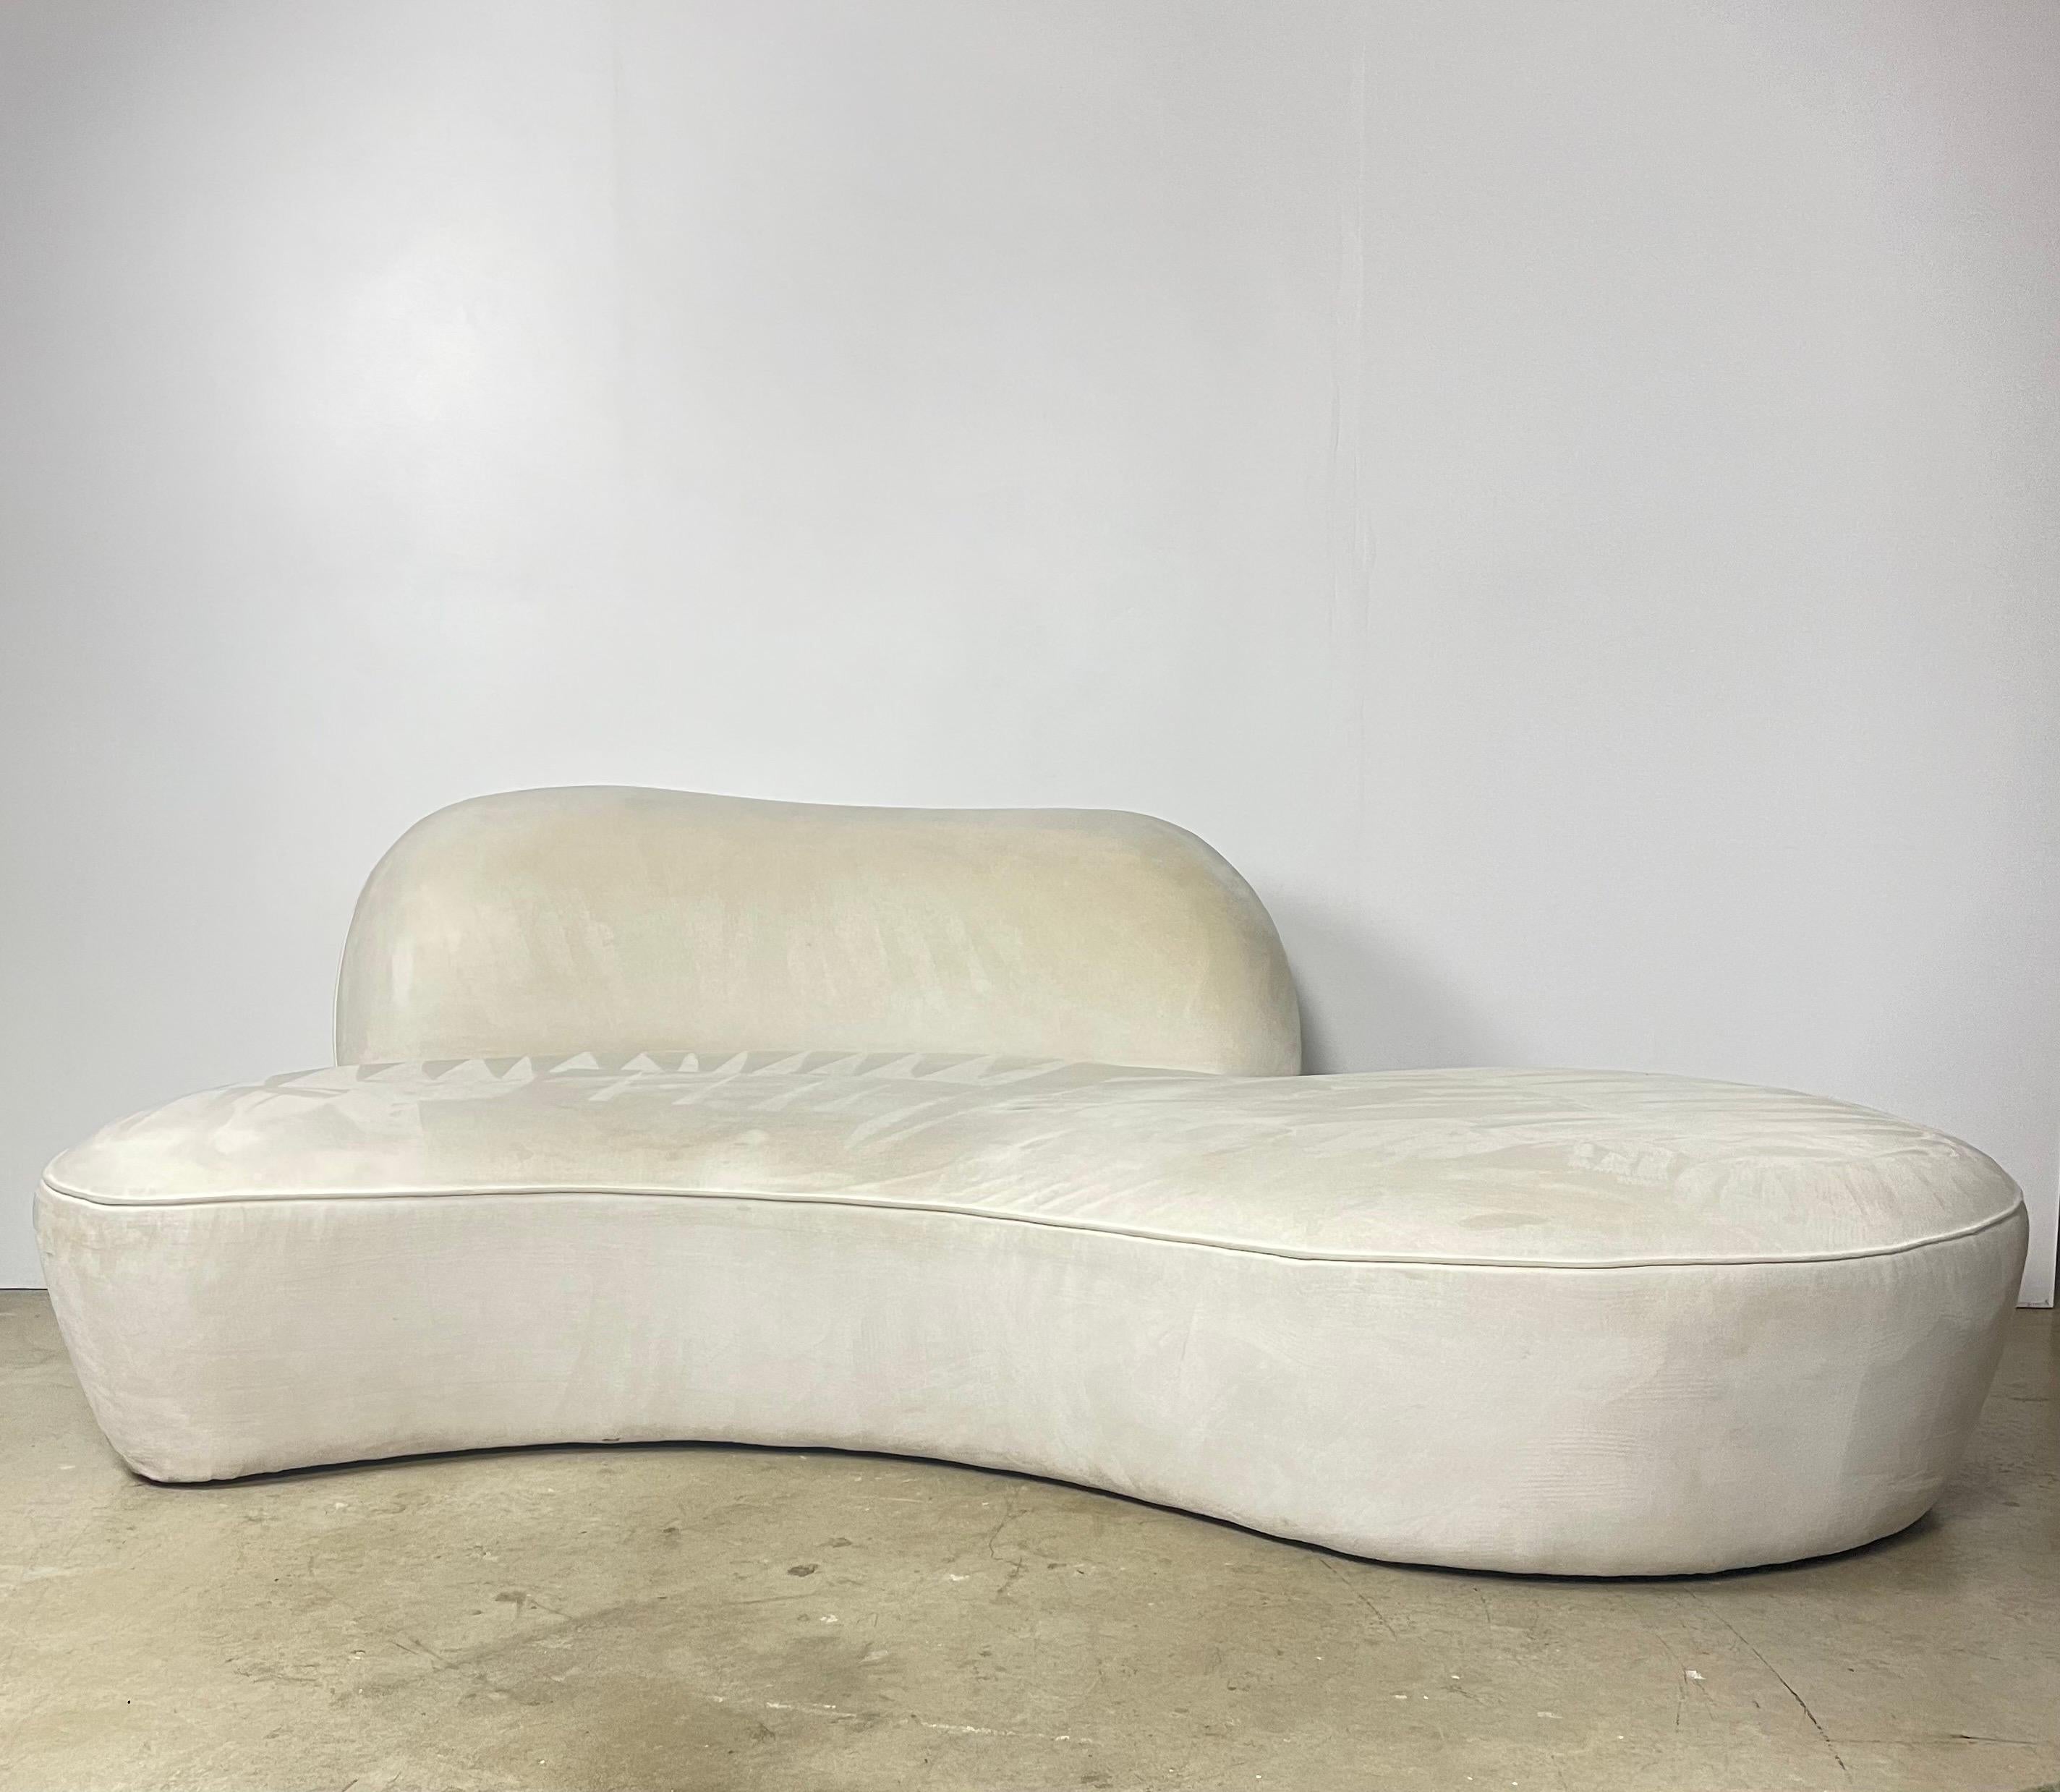 Dies ist ein authentisches Vladimir Kagan Zoe-Sofa, eines seiner berühmtesten Designs. Das Sofa hat eine geschwungene Form, die sowohl elegant als auch bequem ist, mit tiefen Sitzen und Plüschpolstern. Er ist mit einem weißen Ultraleder-Stoff